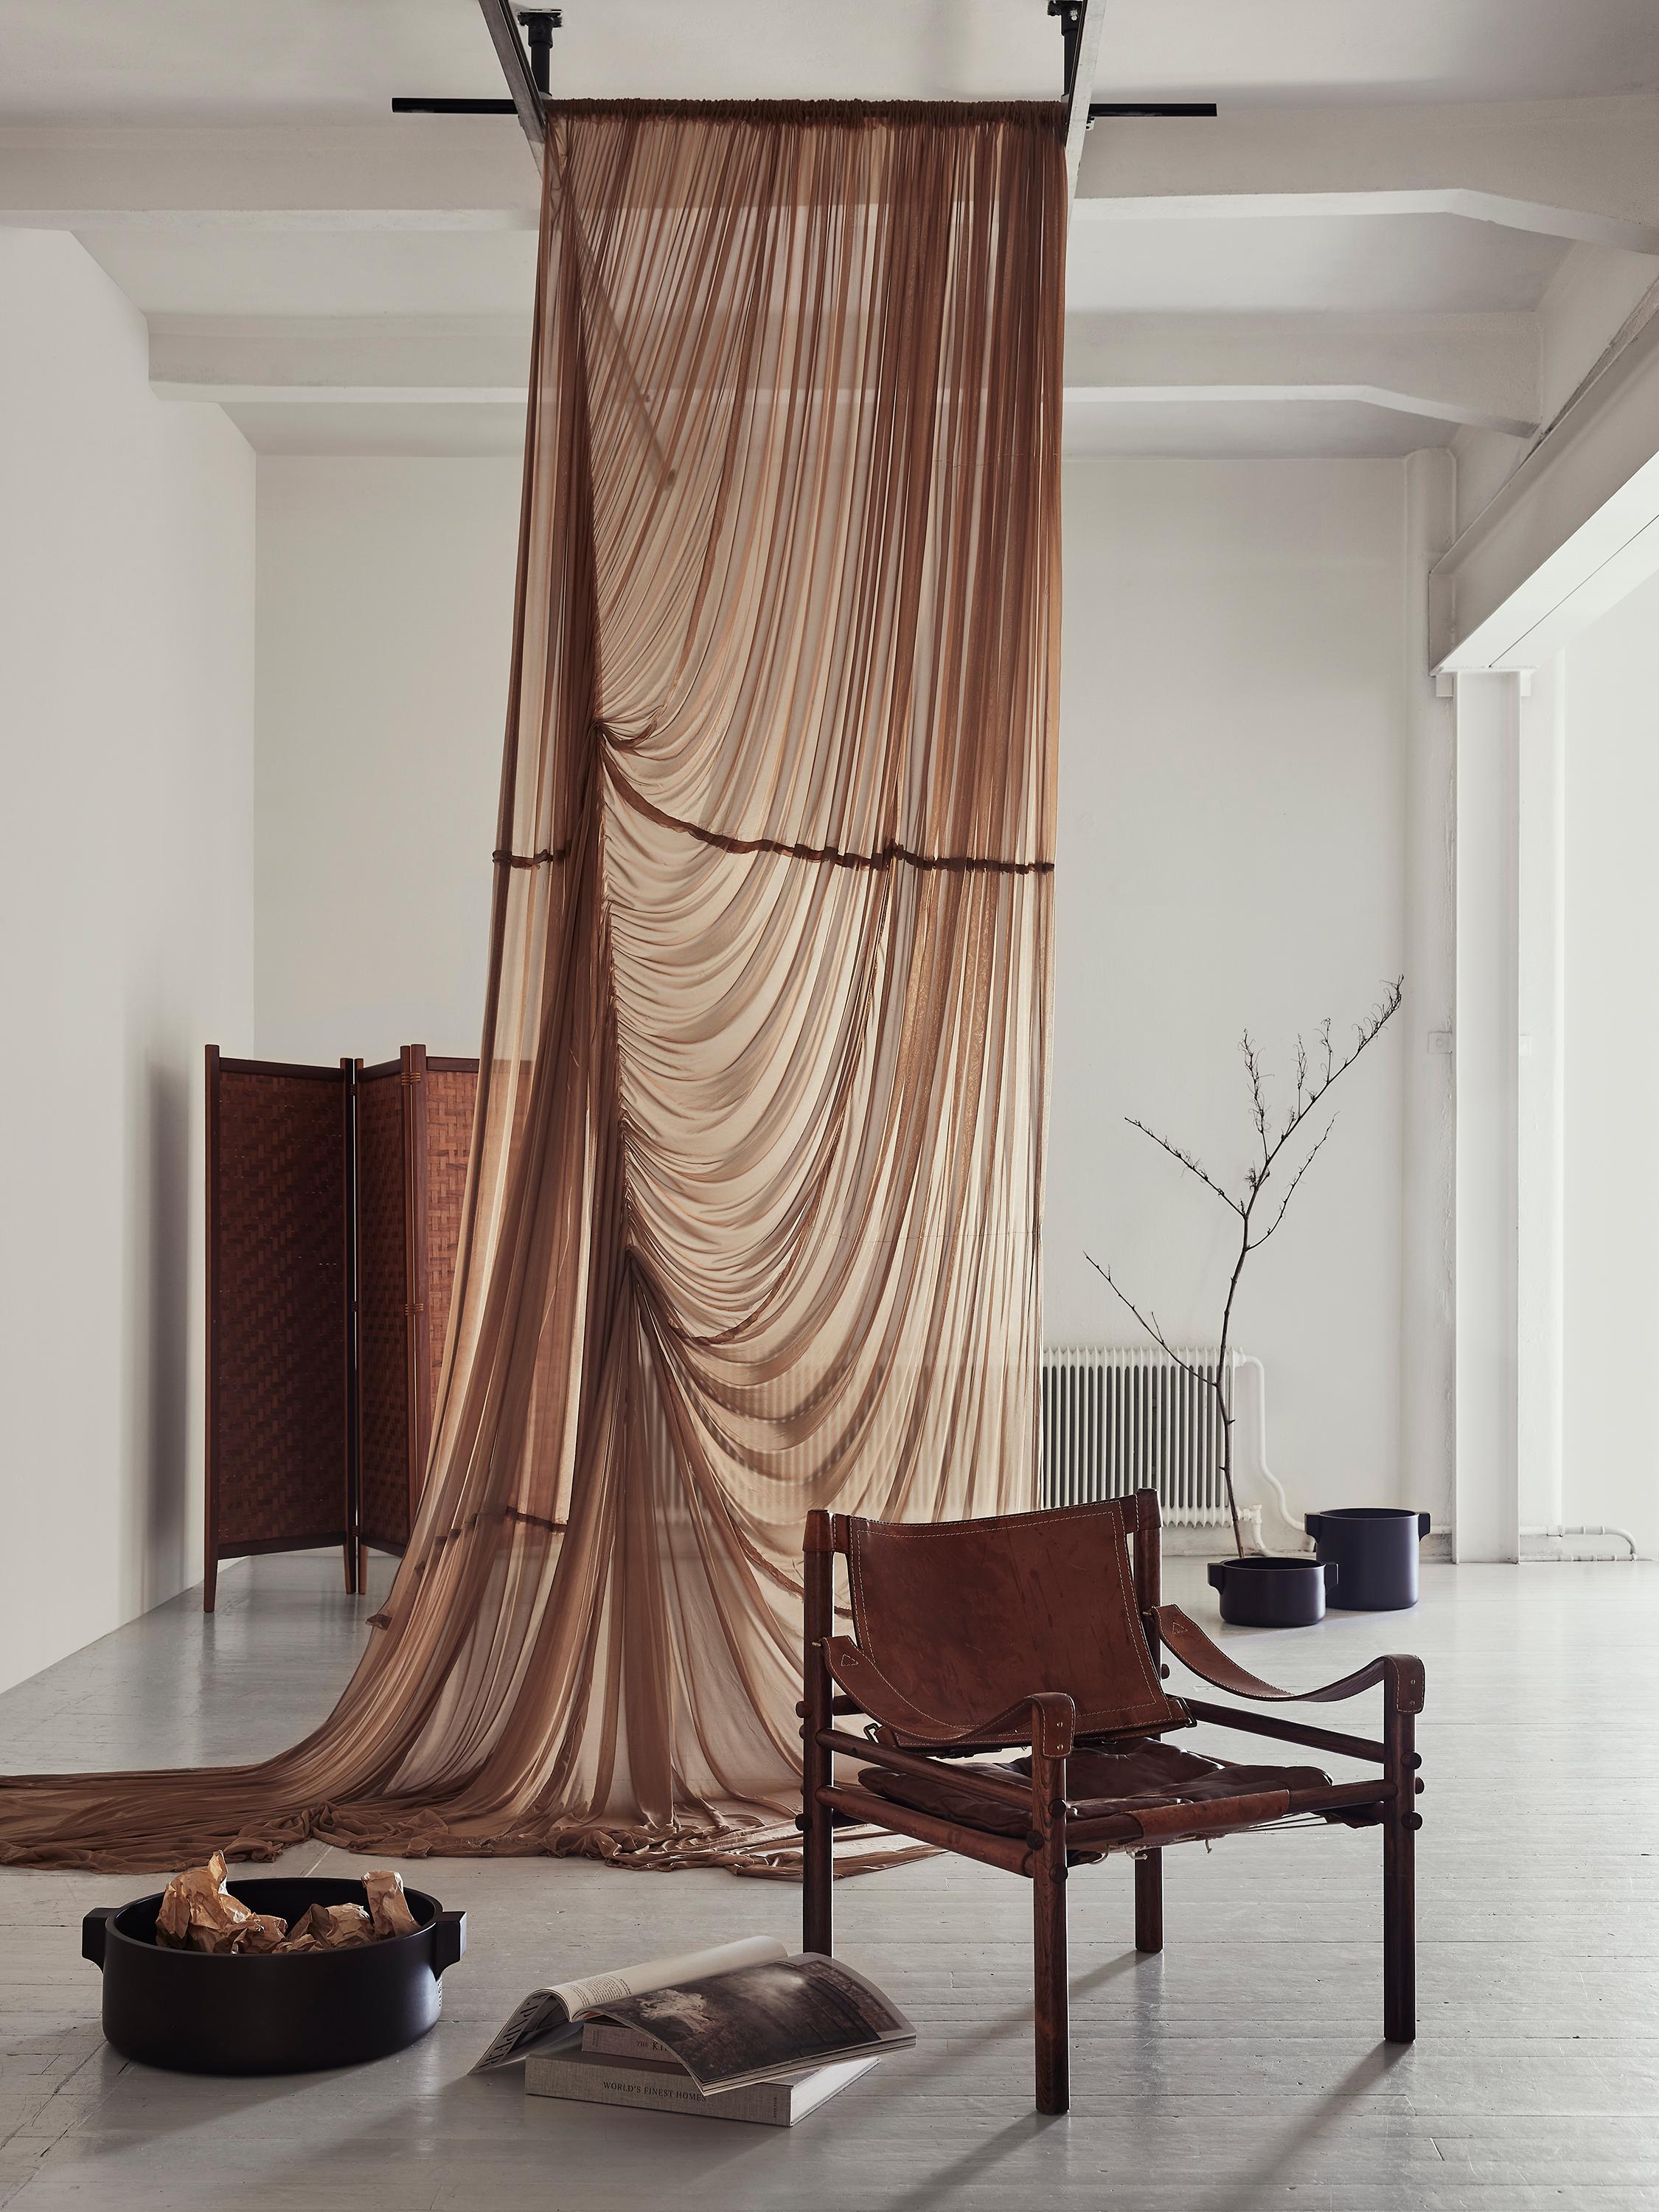 Der Sirocco Sessel, entworfen von Arne Norell, ist ein zeitloses und luxuriöses Möbelstück, das Komfort, Stil und Handwerkskunst nahtlos miteinander verbindet. Er ist eine echte Ikone des skandinavischen Designs und spiegelt Norells Engagement für